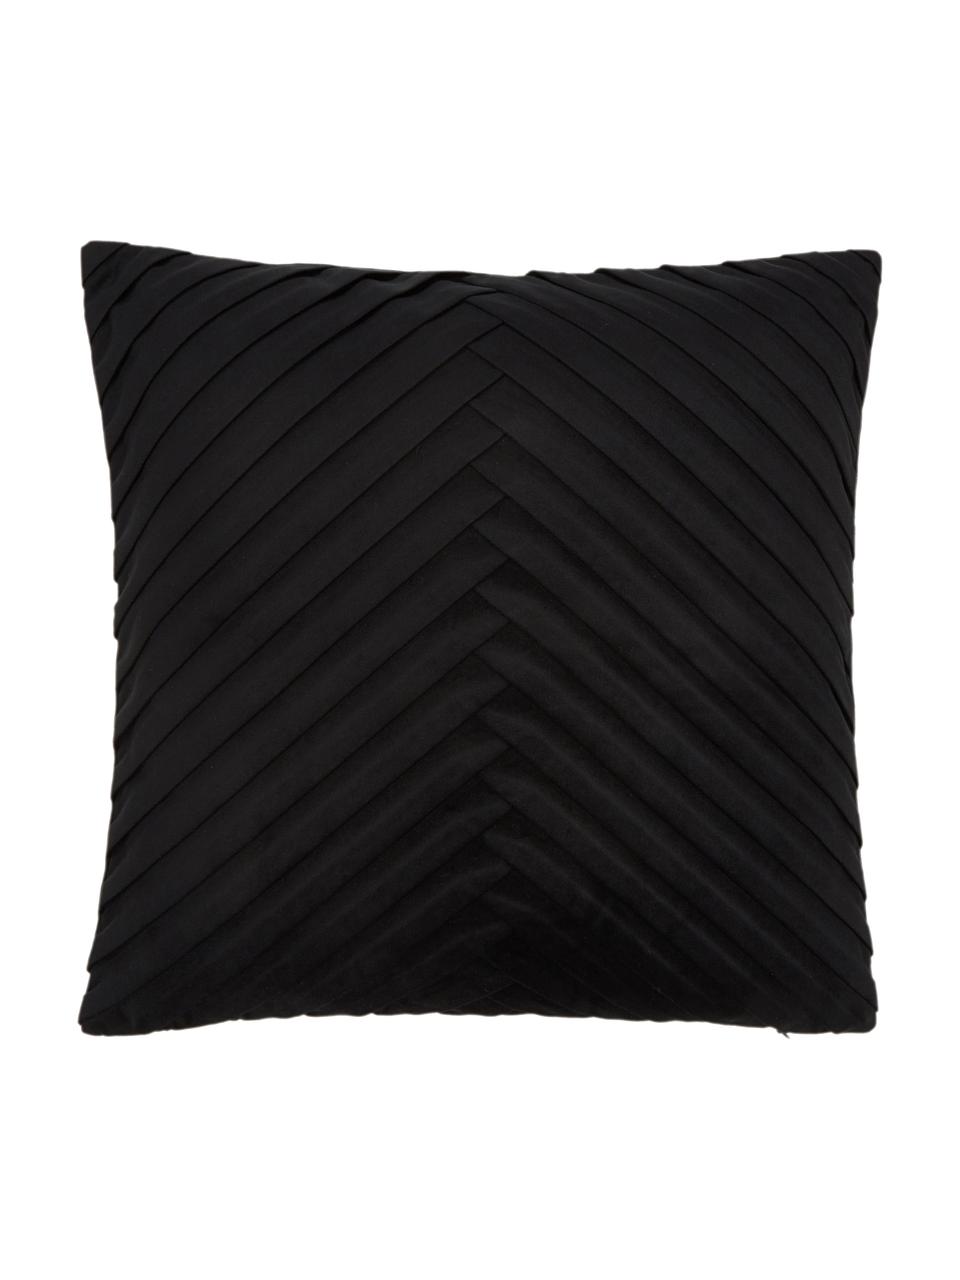 Housse de coussin en velours noir Lucie, 100 % velours de polyester, Noir, larg. 45 x long. 45 cm